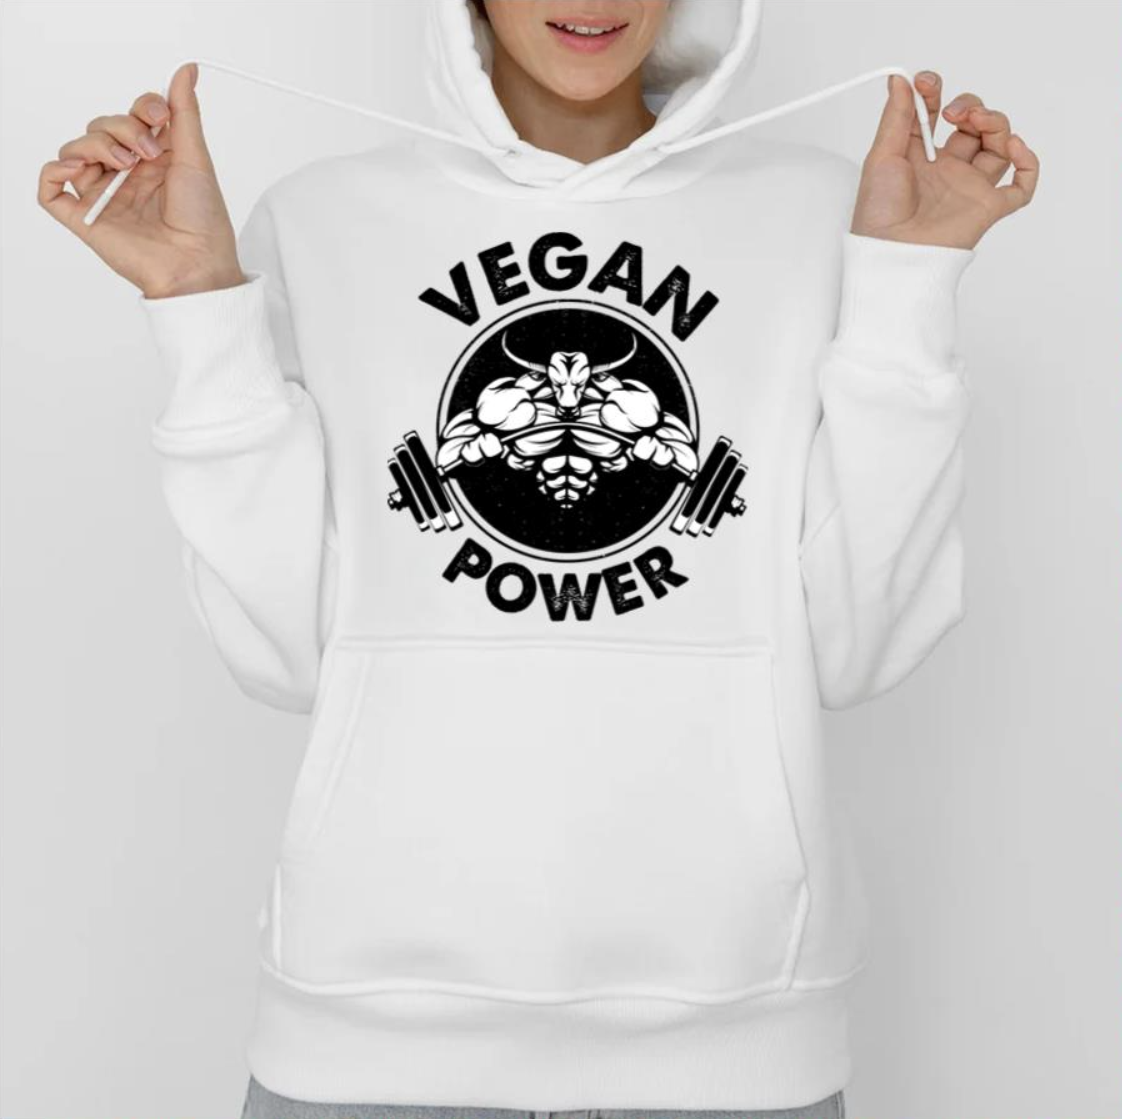 Vegan Power Workout shirt